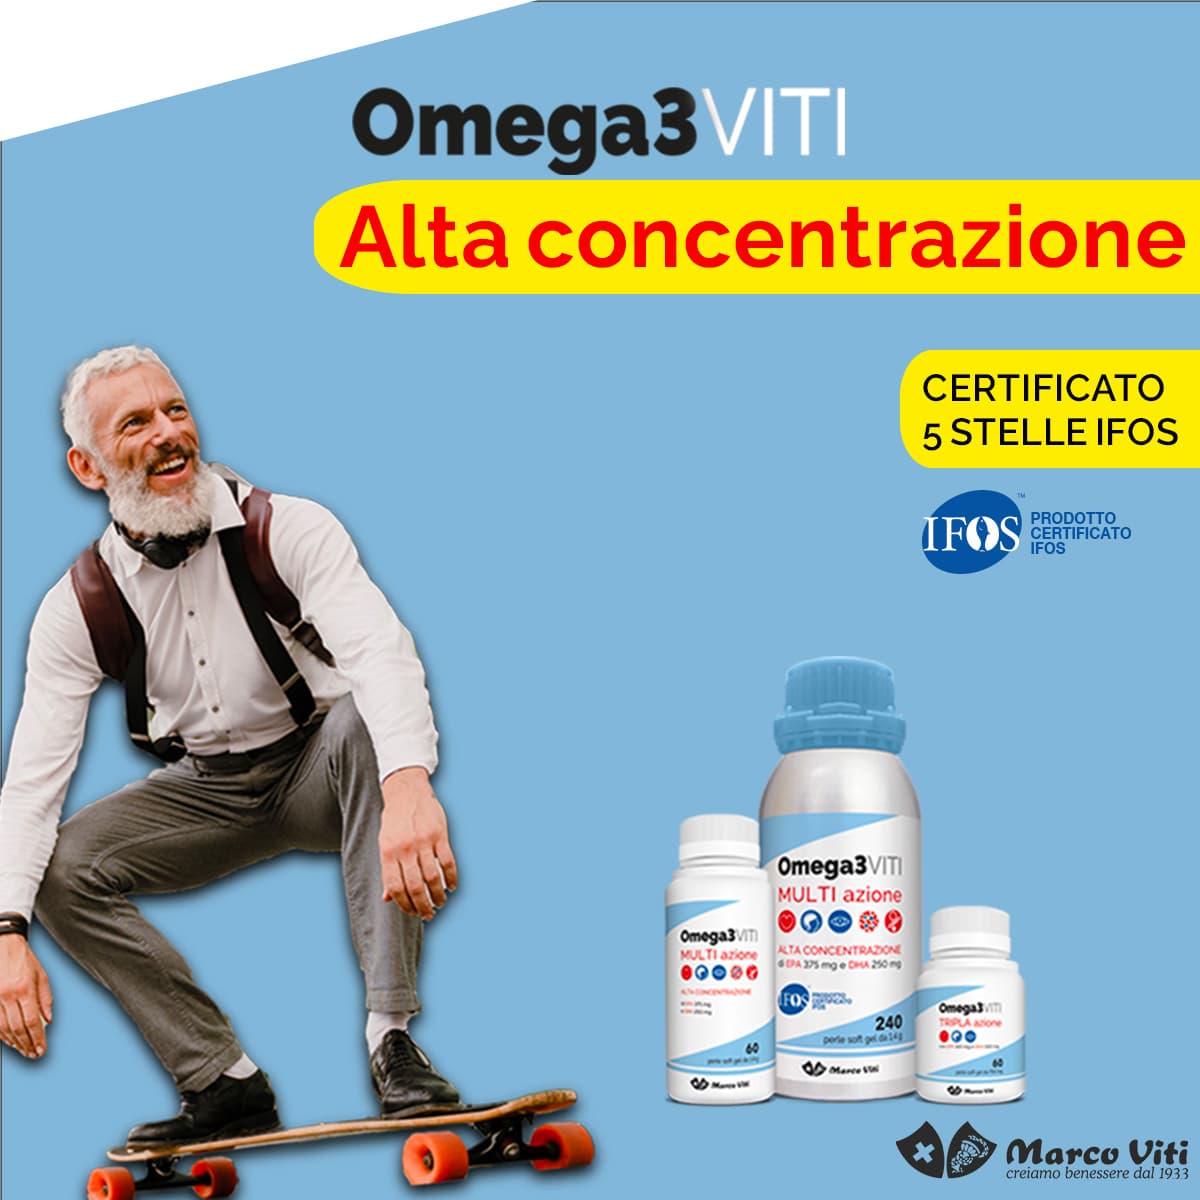 Marco Viti Omega3 Alta concentrazione - Al mantenimento della normale funzione cardiaca ci pensa omega3 Viti!